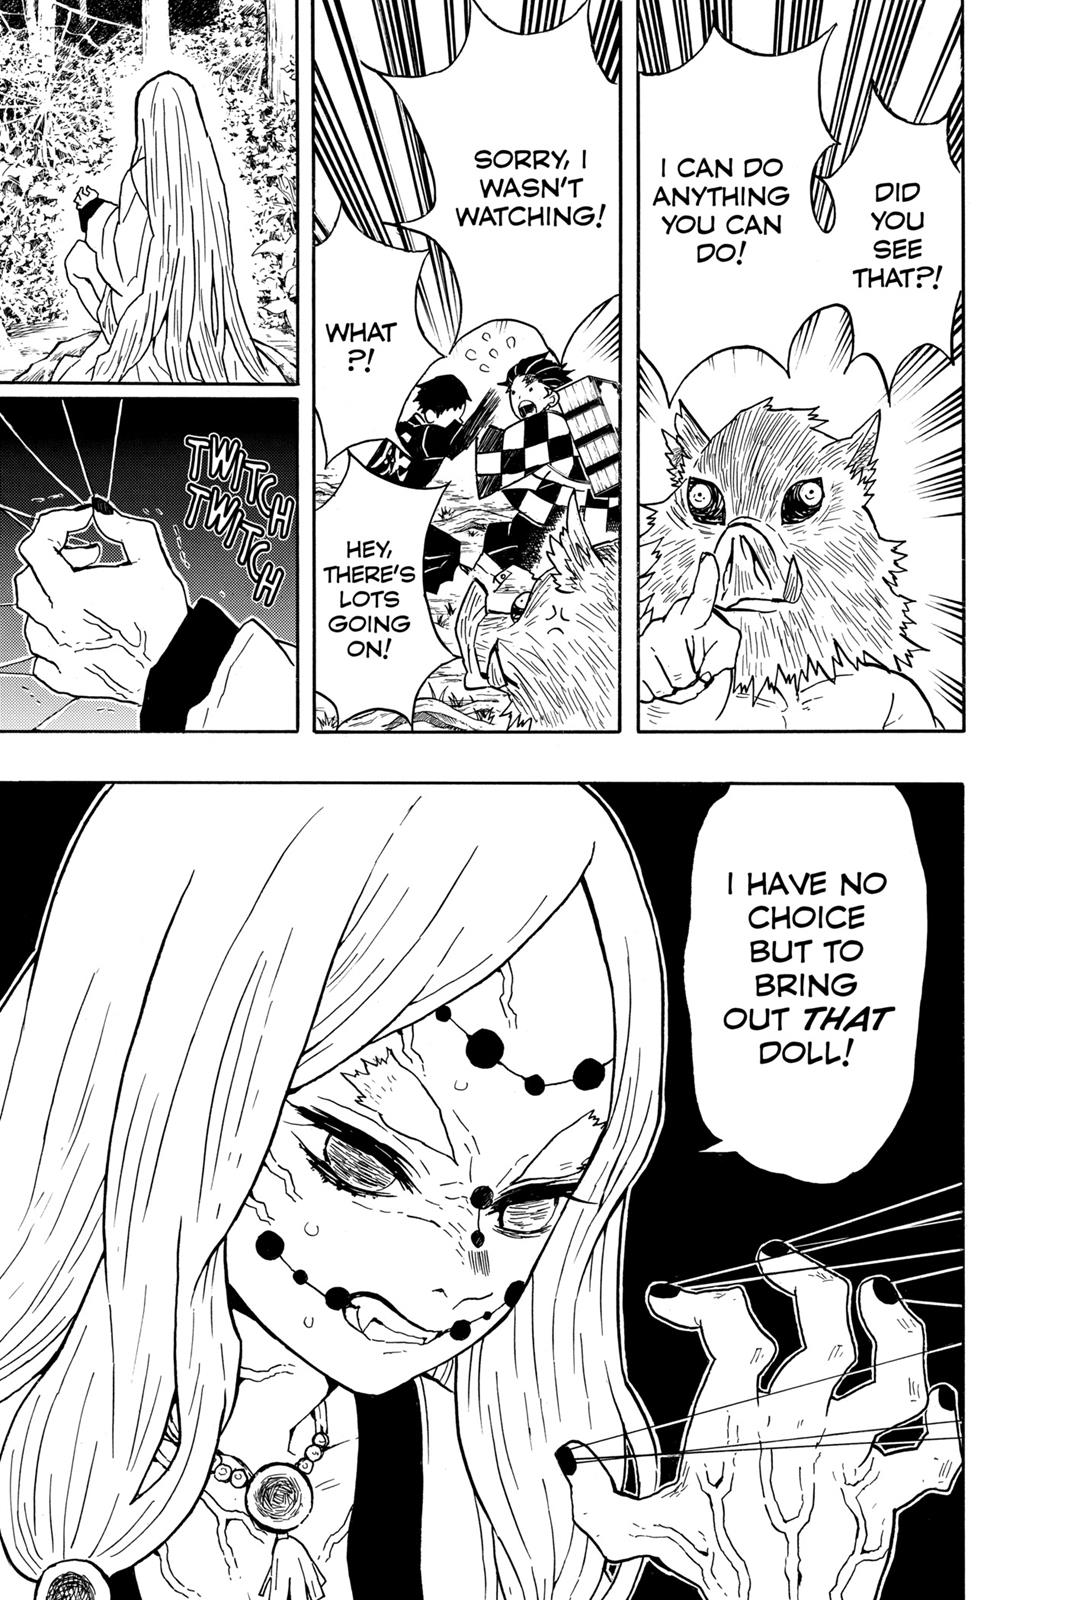 Demon Slayer Manga Manga Chapter - 30 - image 7